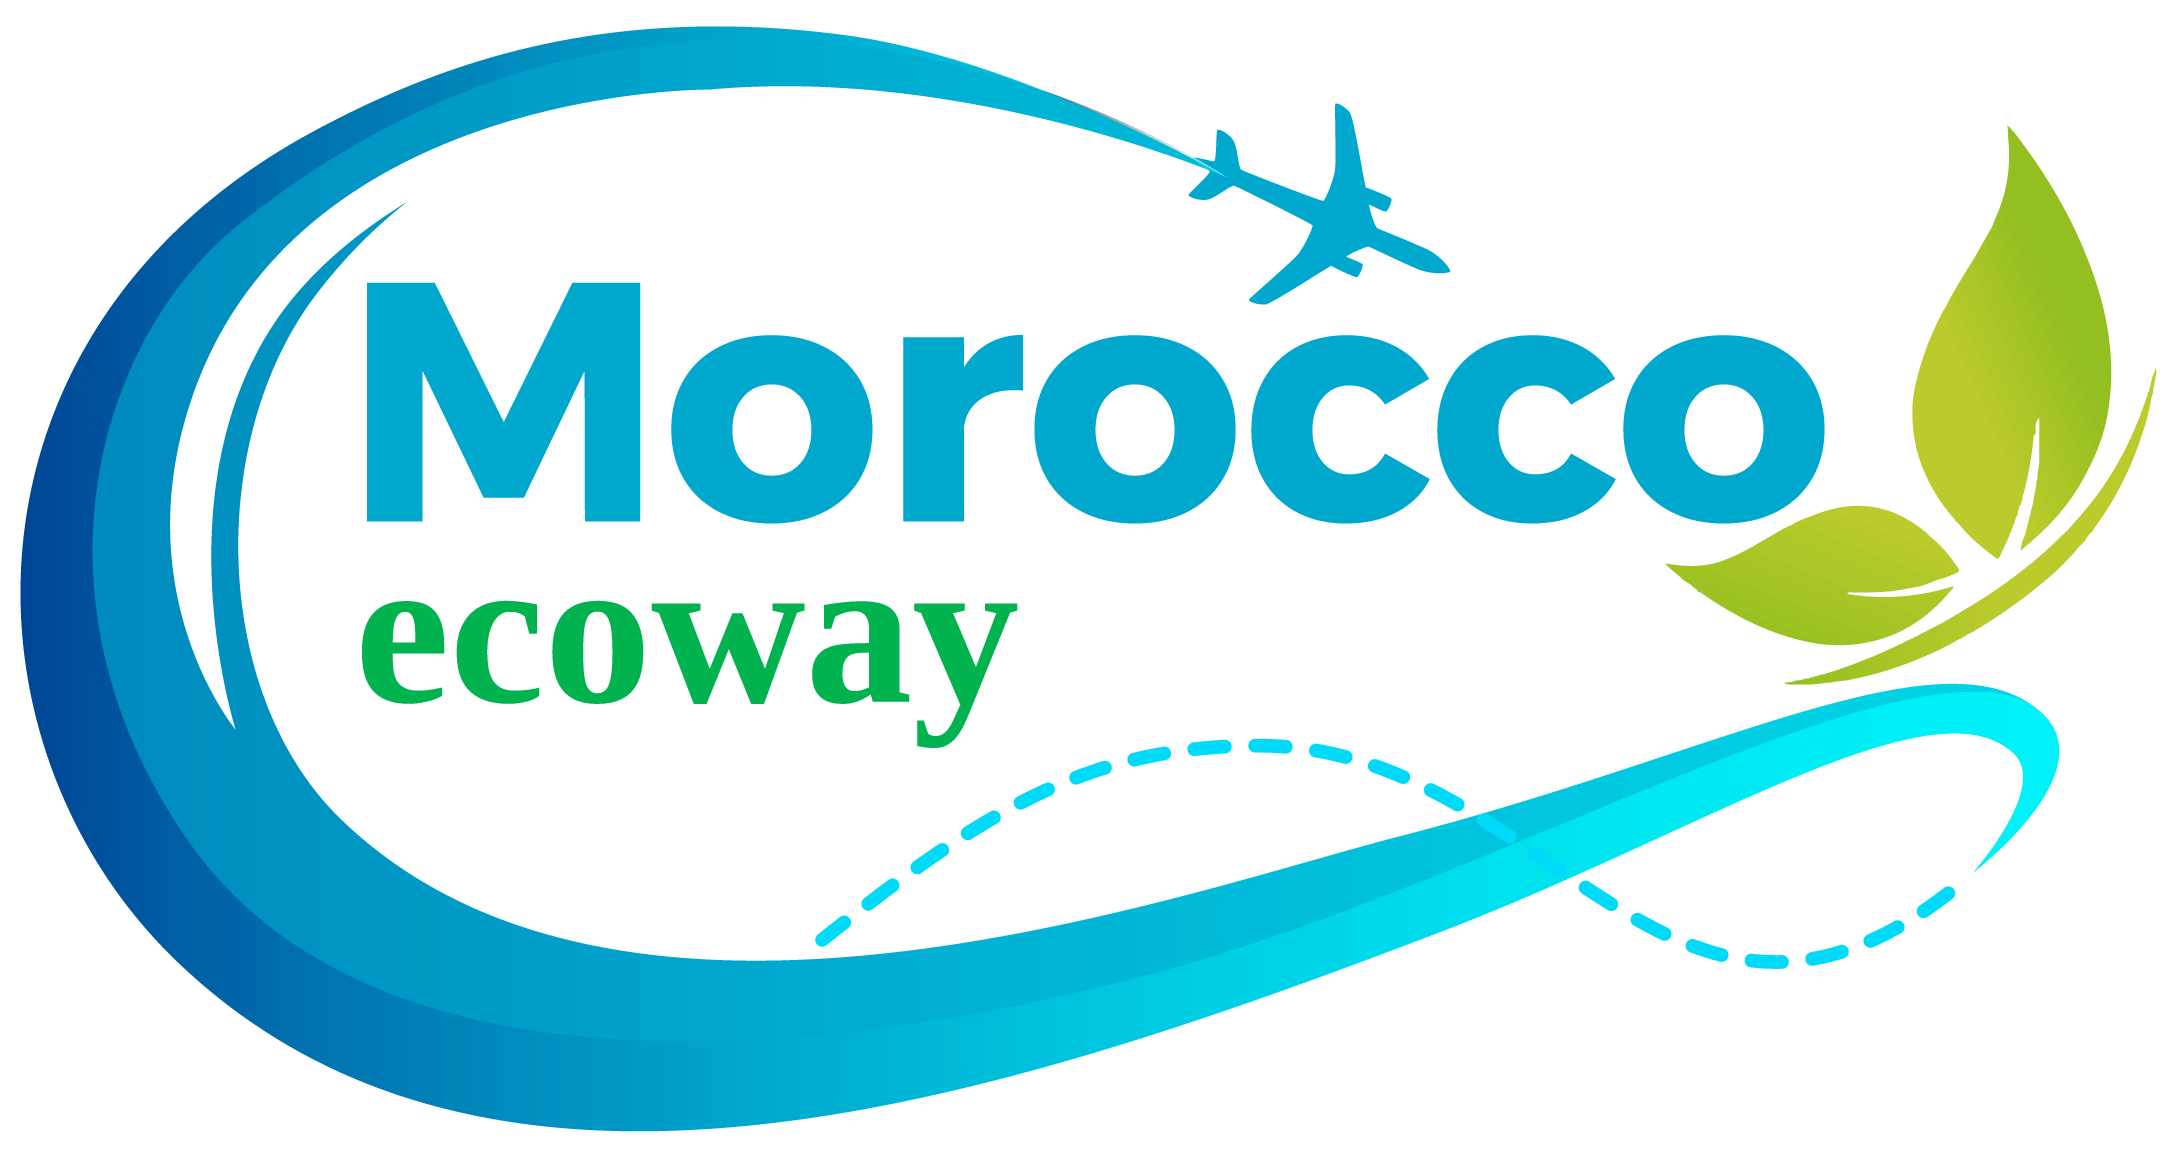 (c) Morocco-ecoway.com